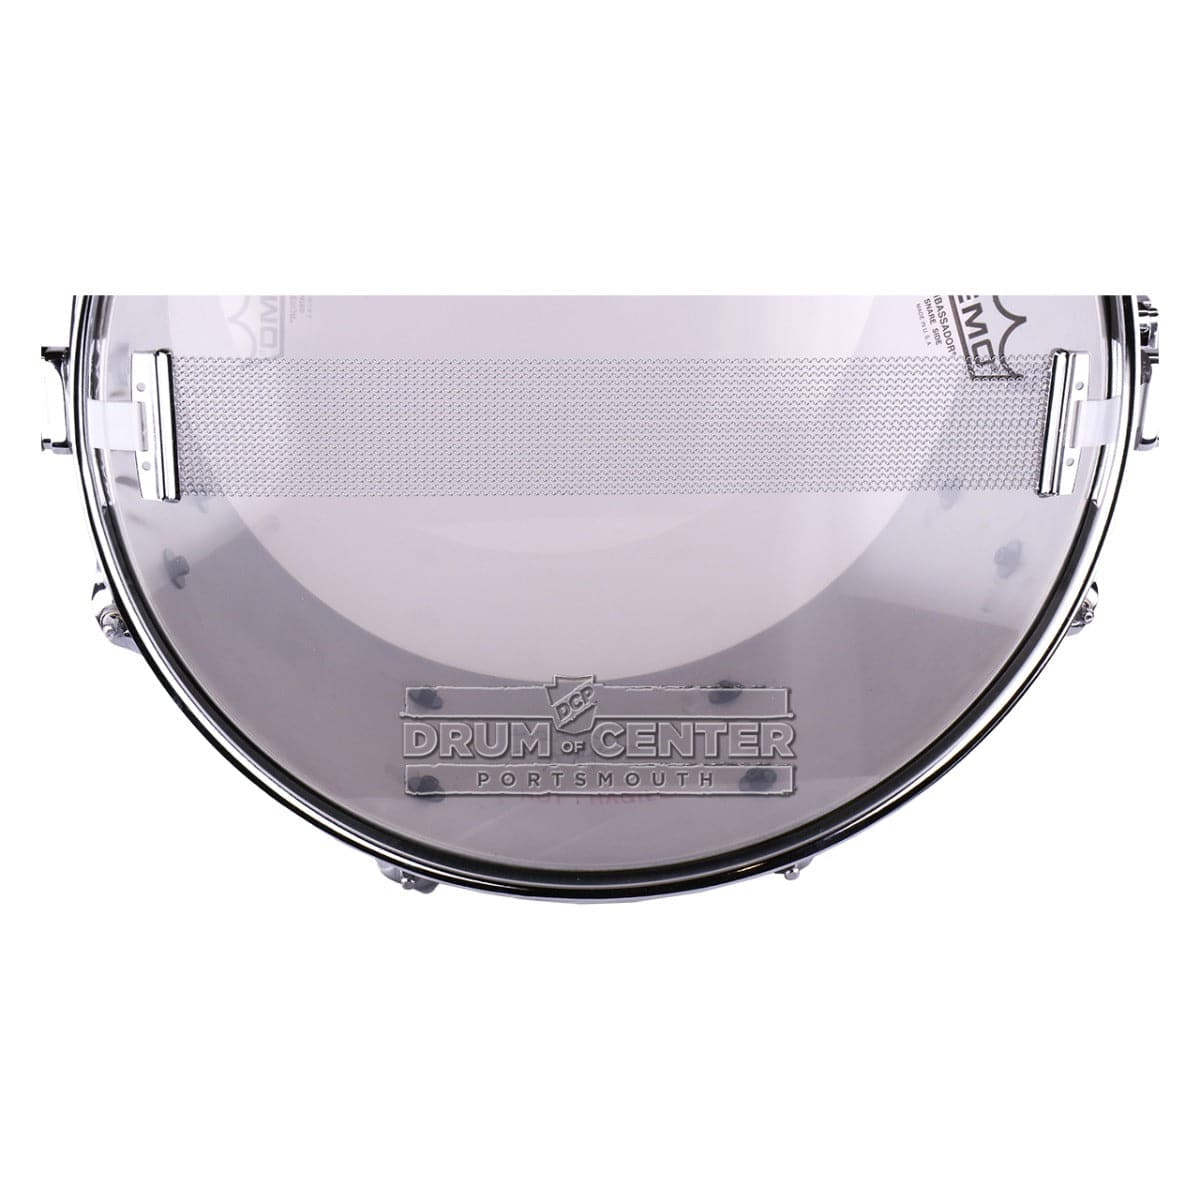 Keplinger Stainless Steel Snare Drum 14x7